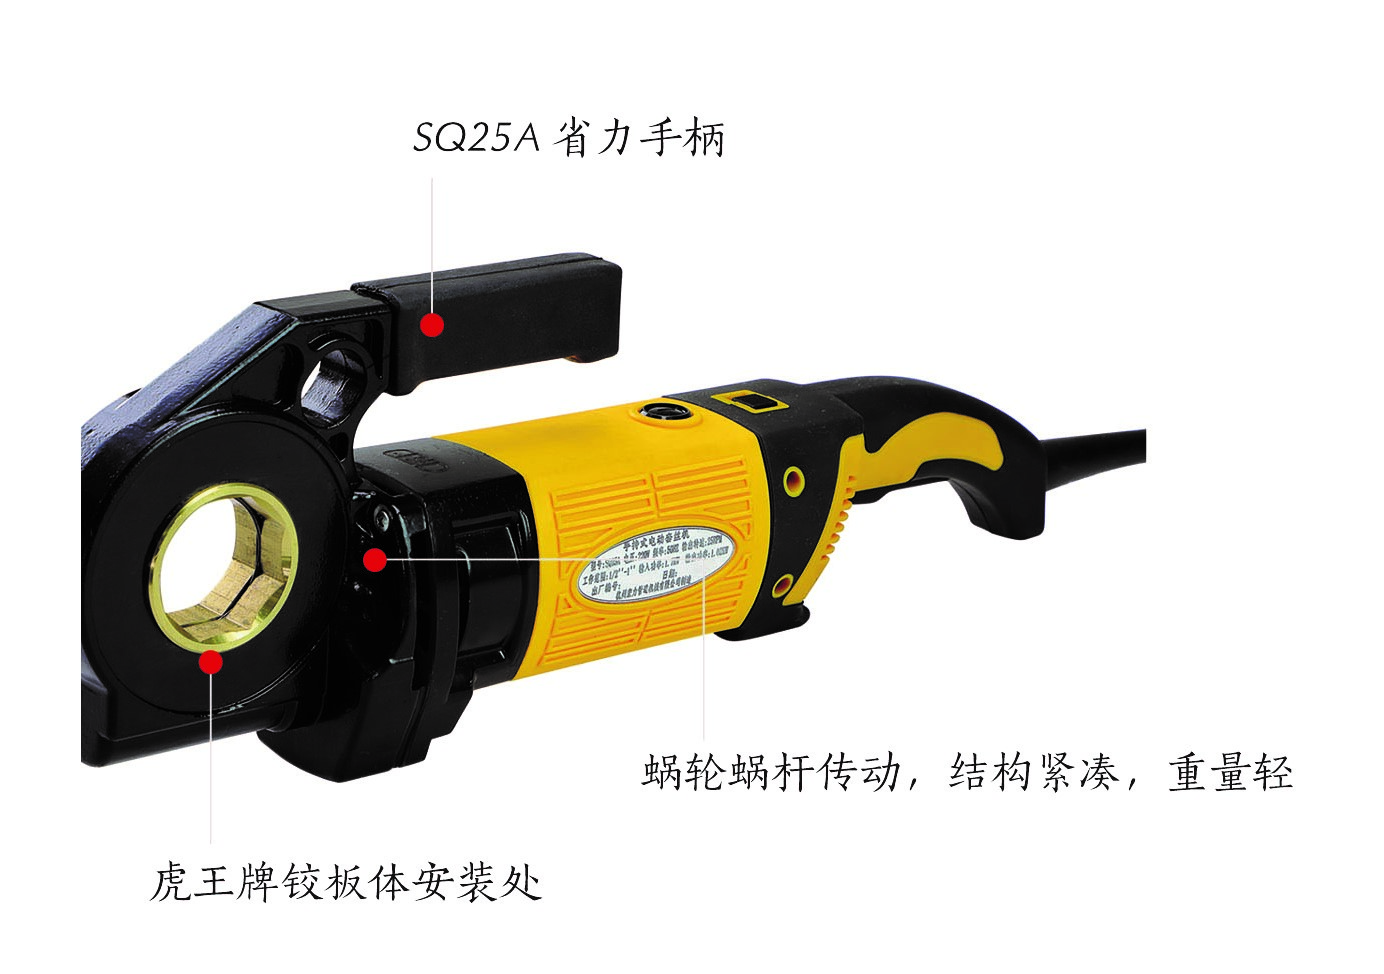 虎王SQ25A手持式电动套丝机1/2-1寸维修轻便款专用套丝机| 虎王手持套丝机